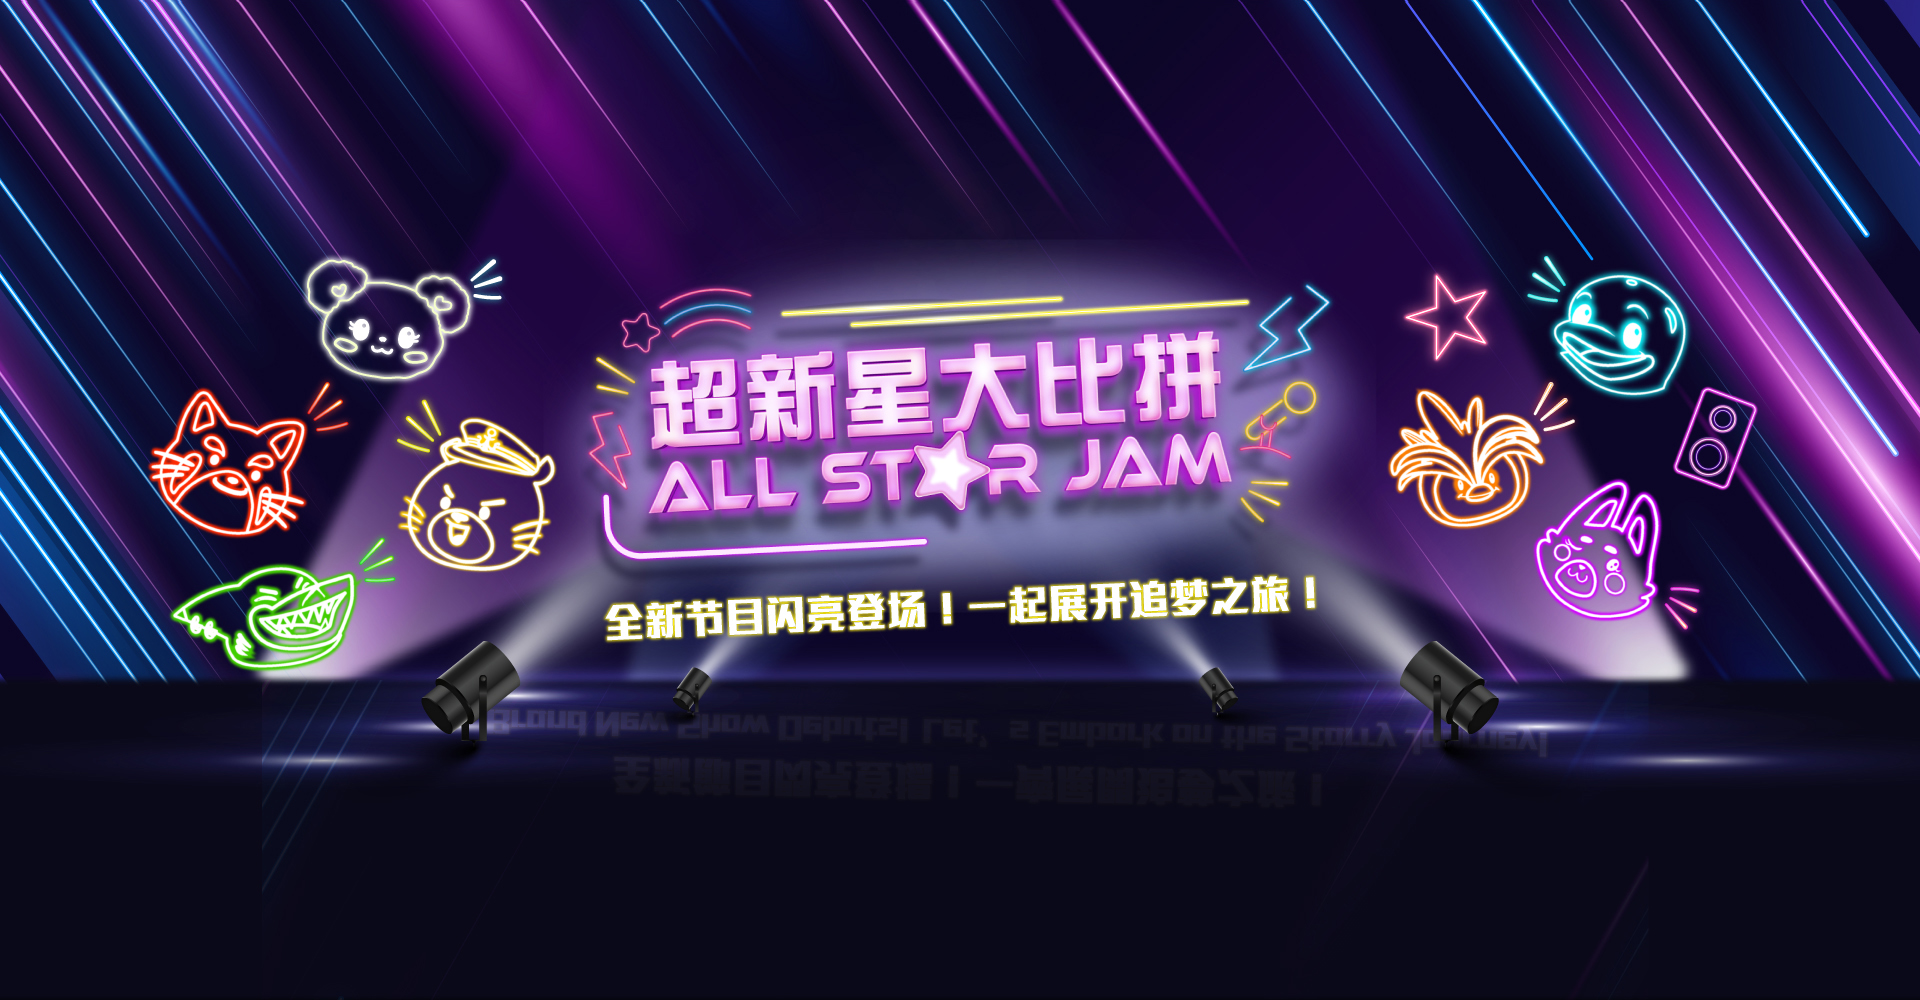 https://media.oceanpark.com.hk/files/s3fs-public/all-star-jam-desktop-banner-sc.jpg